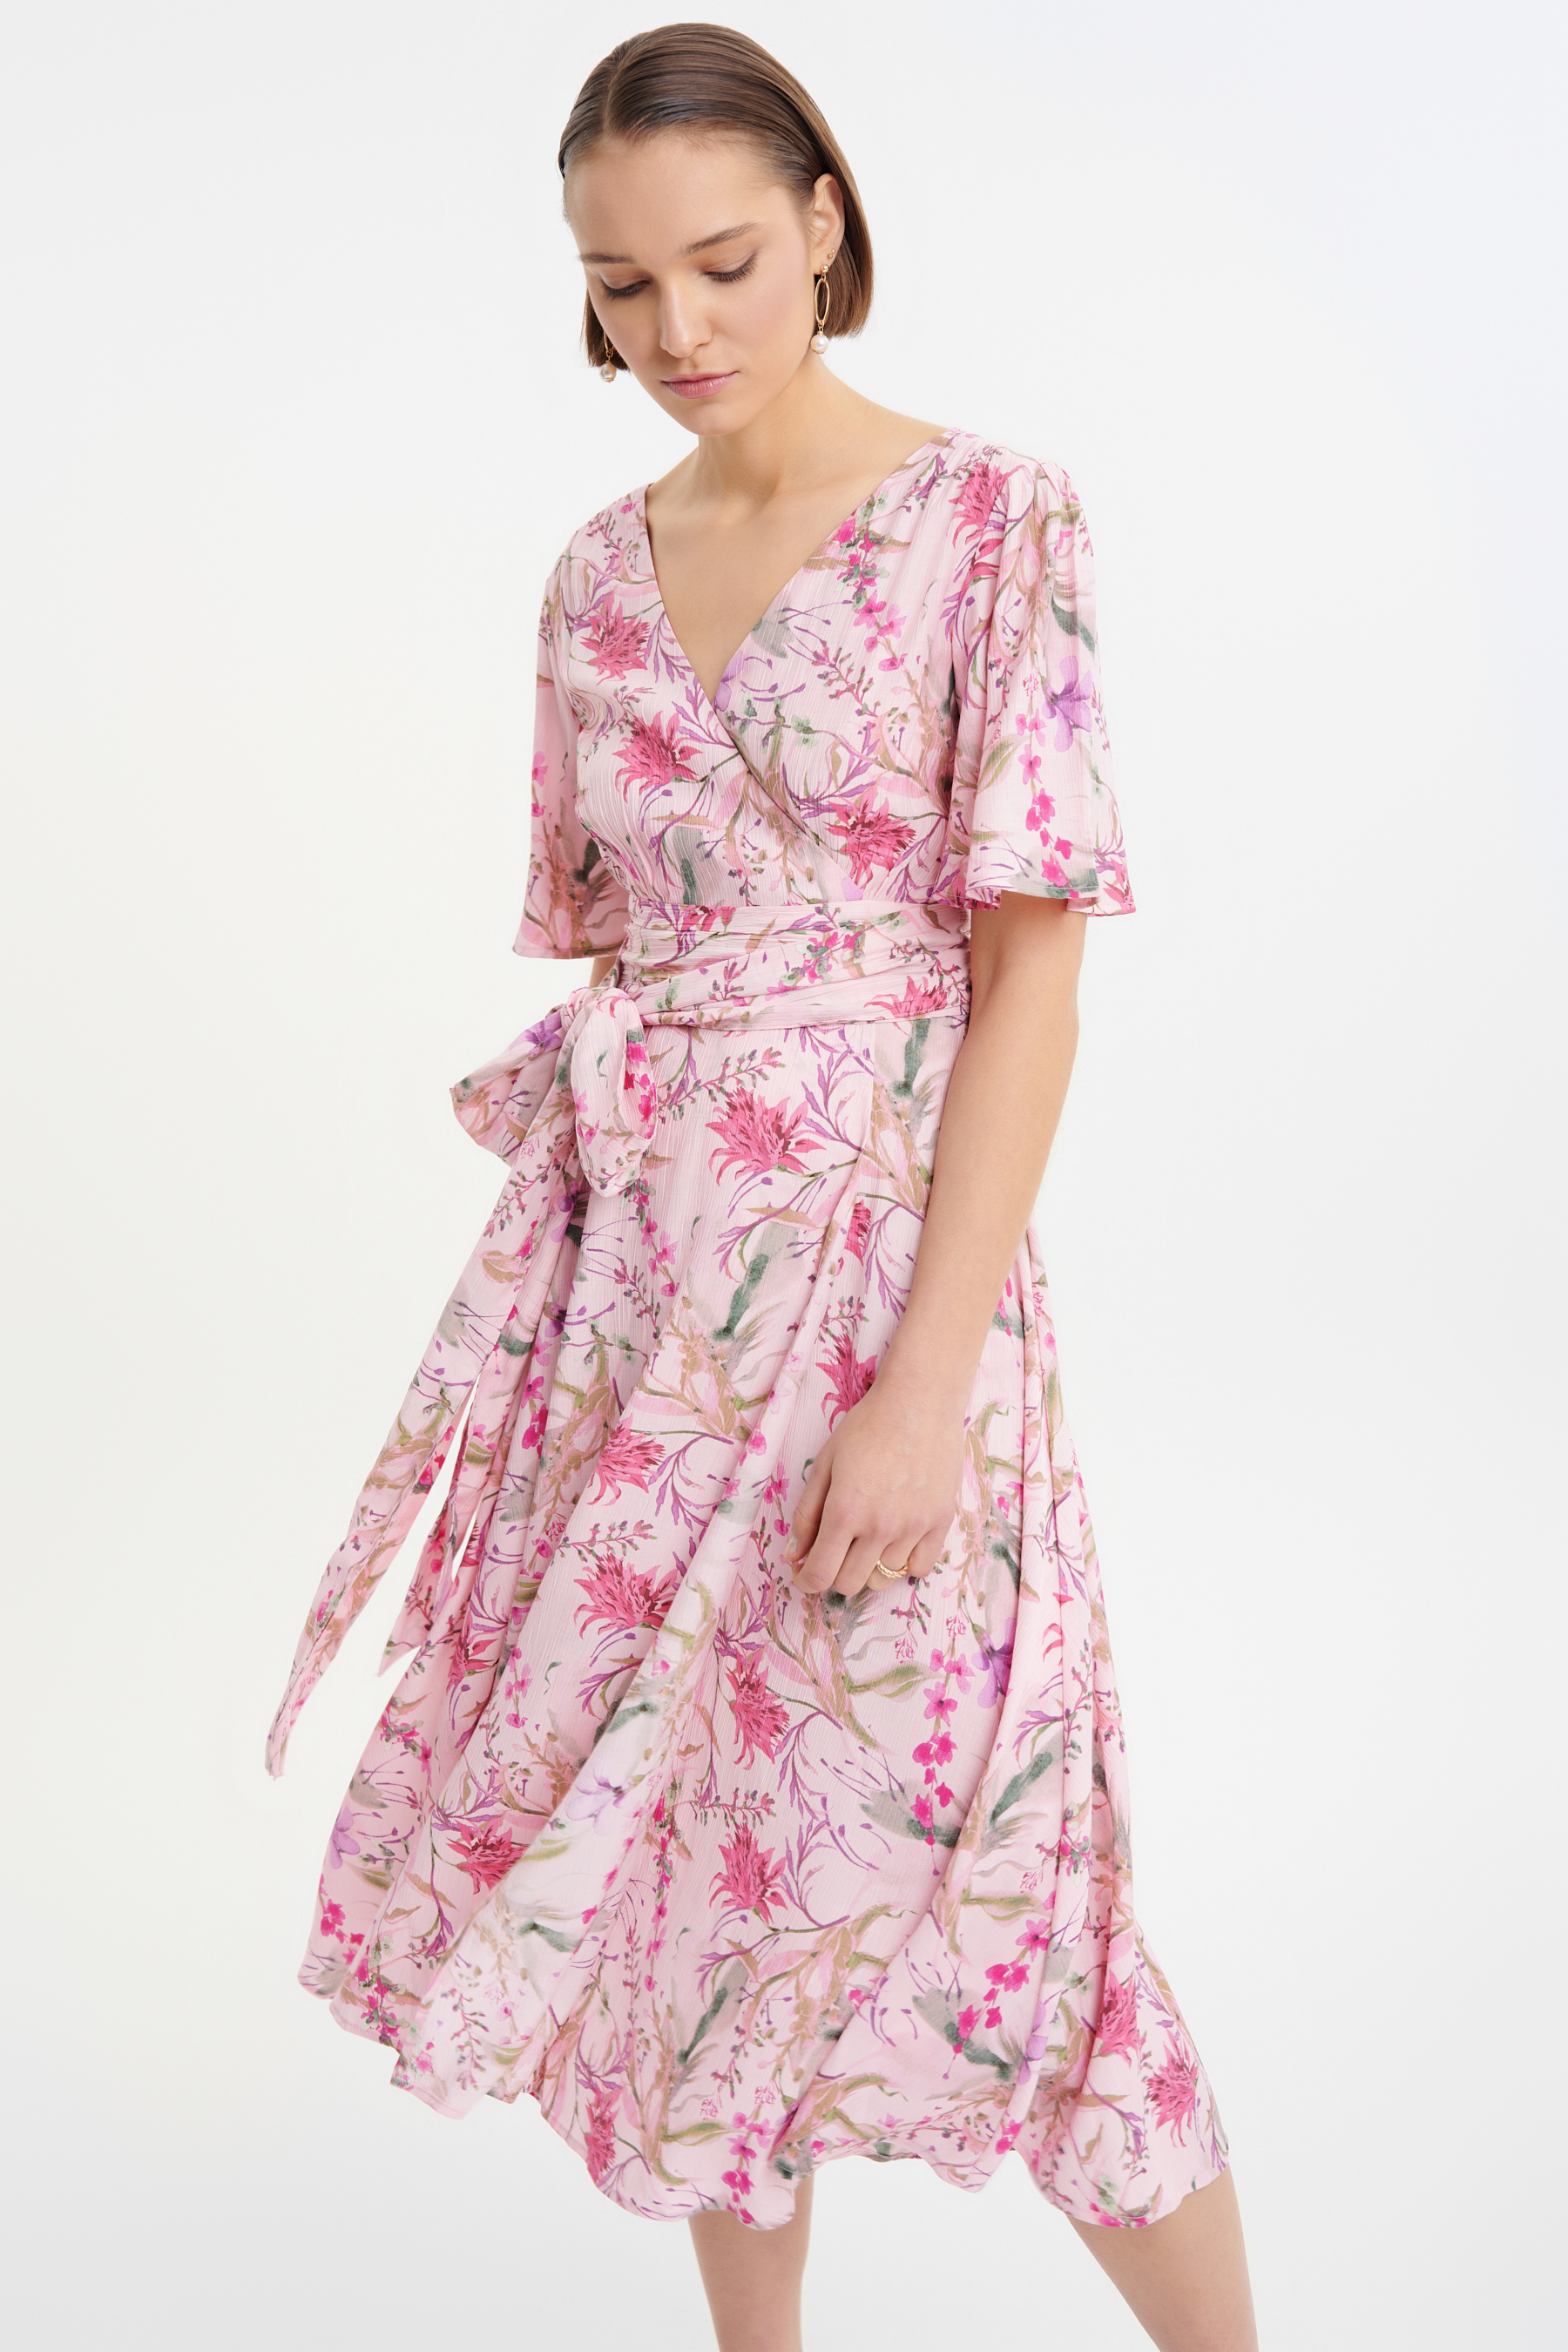 Stylowa sukienka z wiskozy różowa